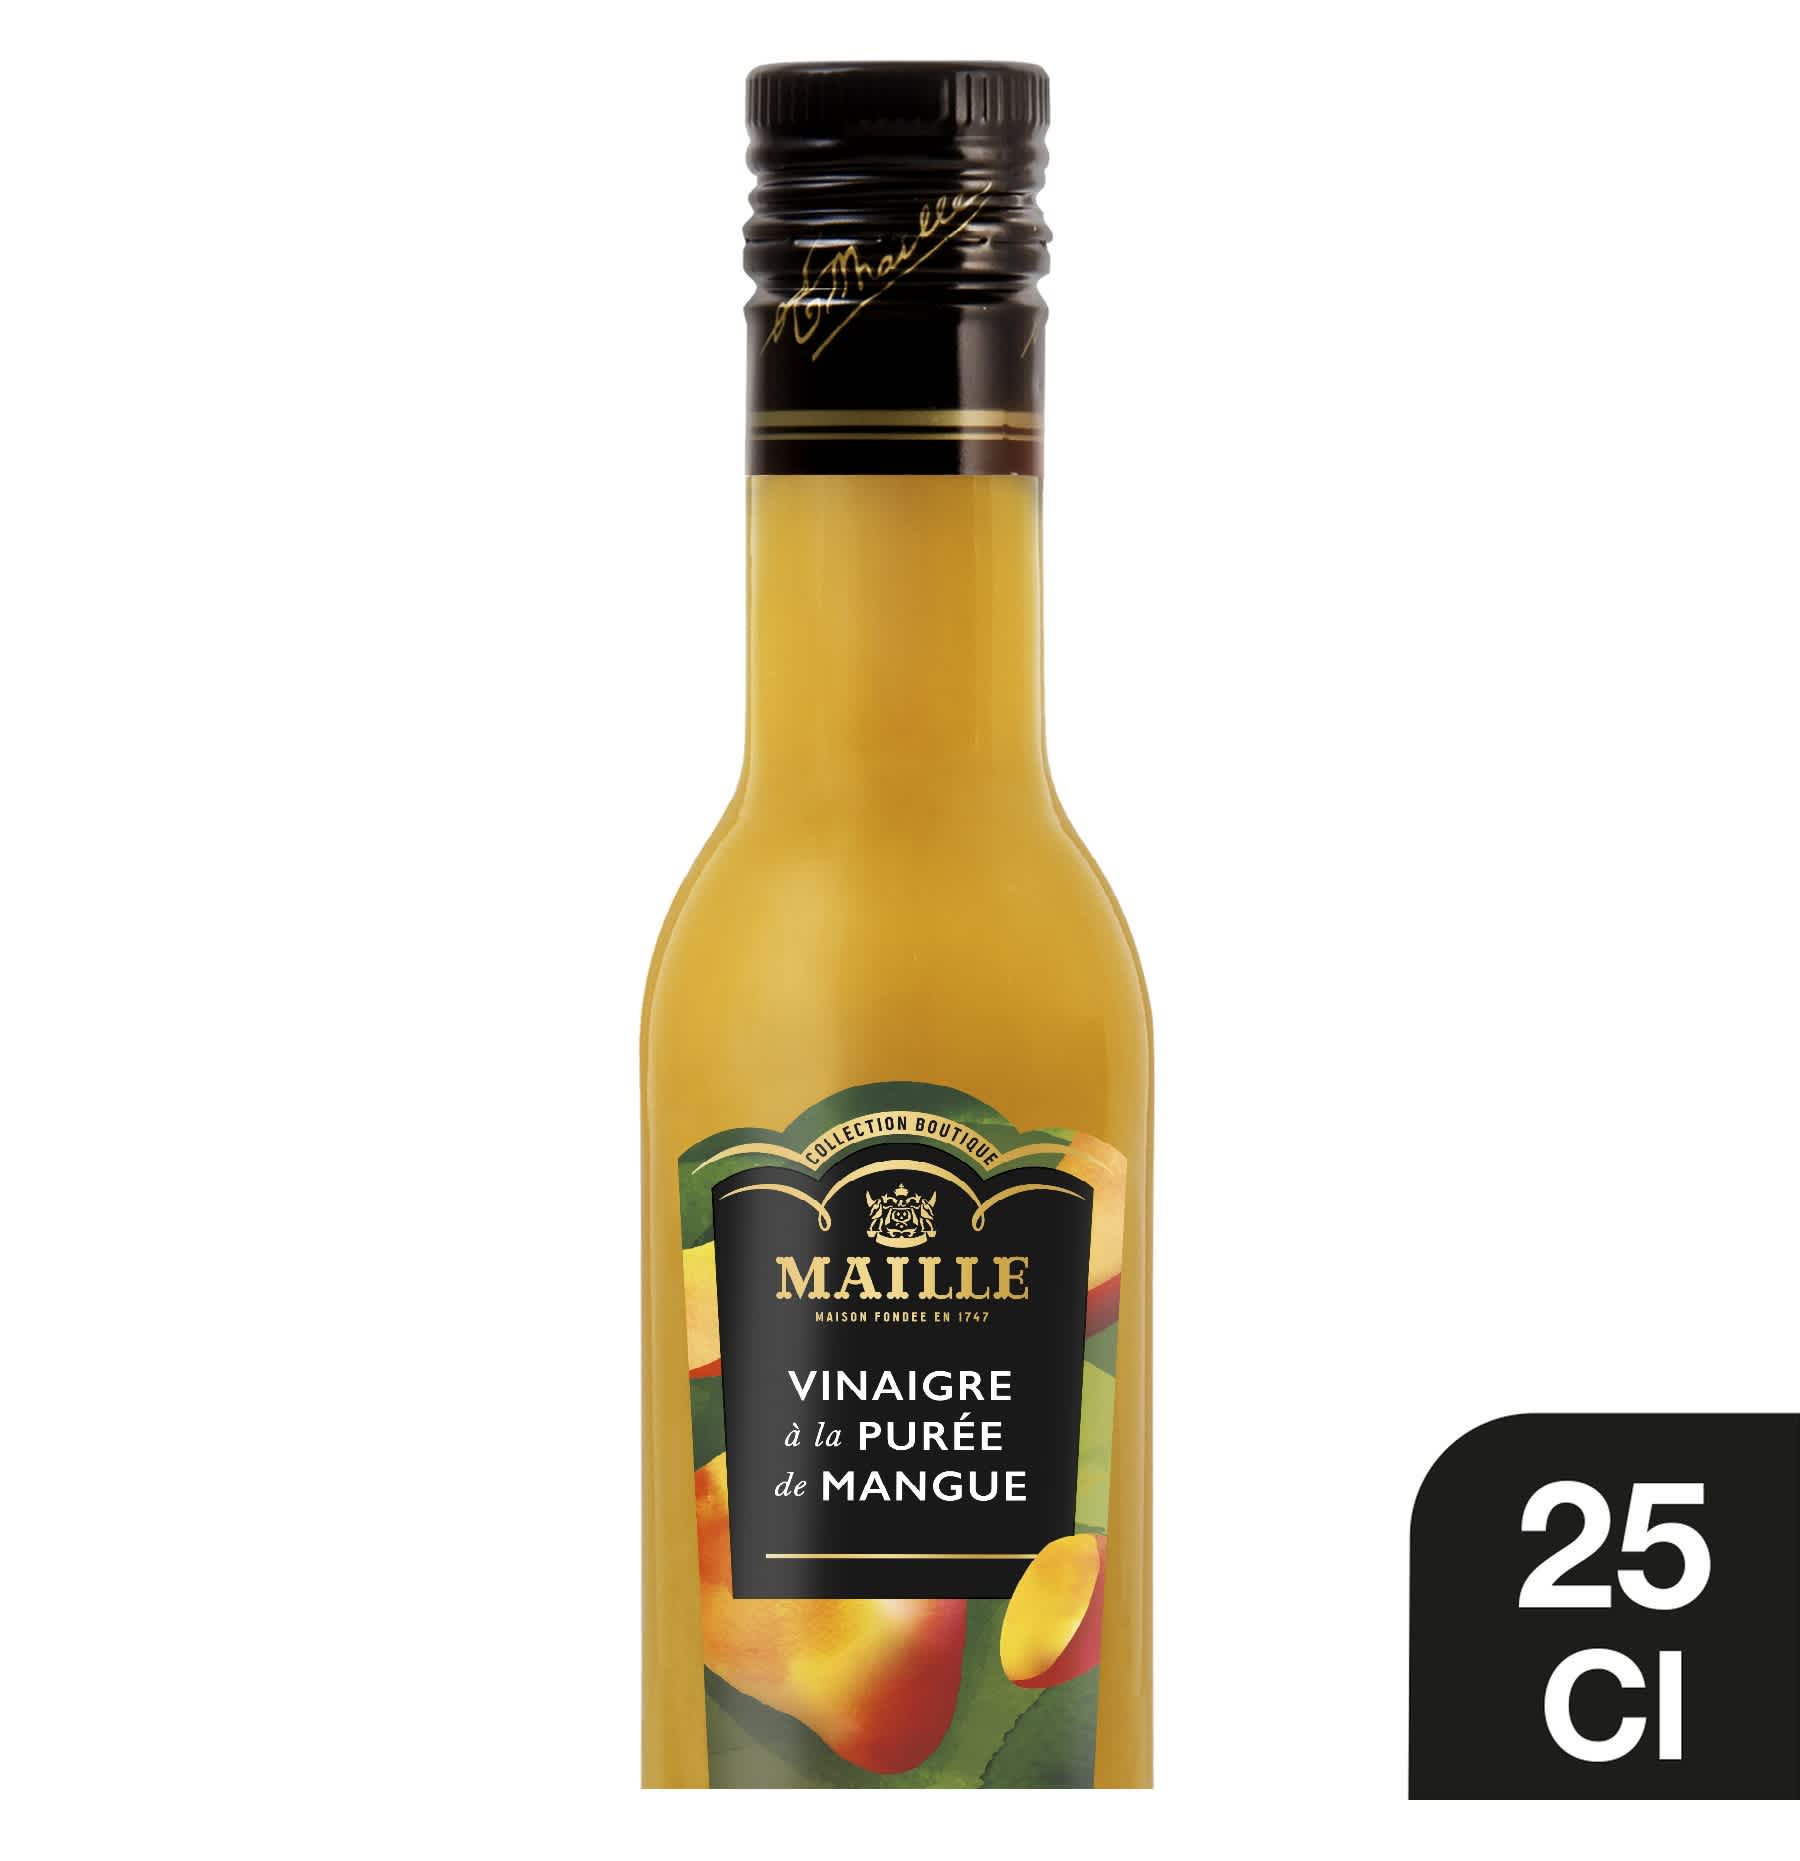 Maille - Vinaigre a la puree de mangue, 250 ml